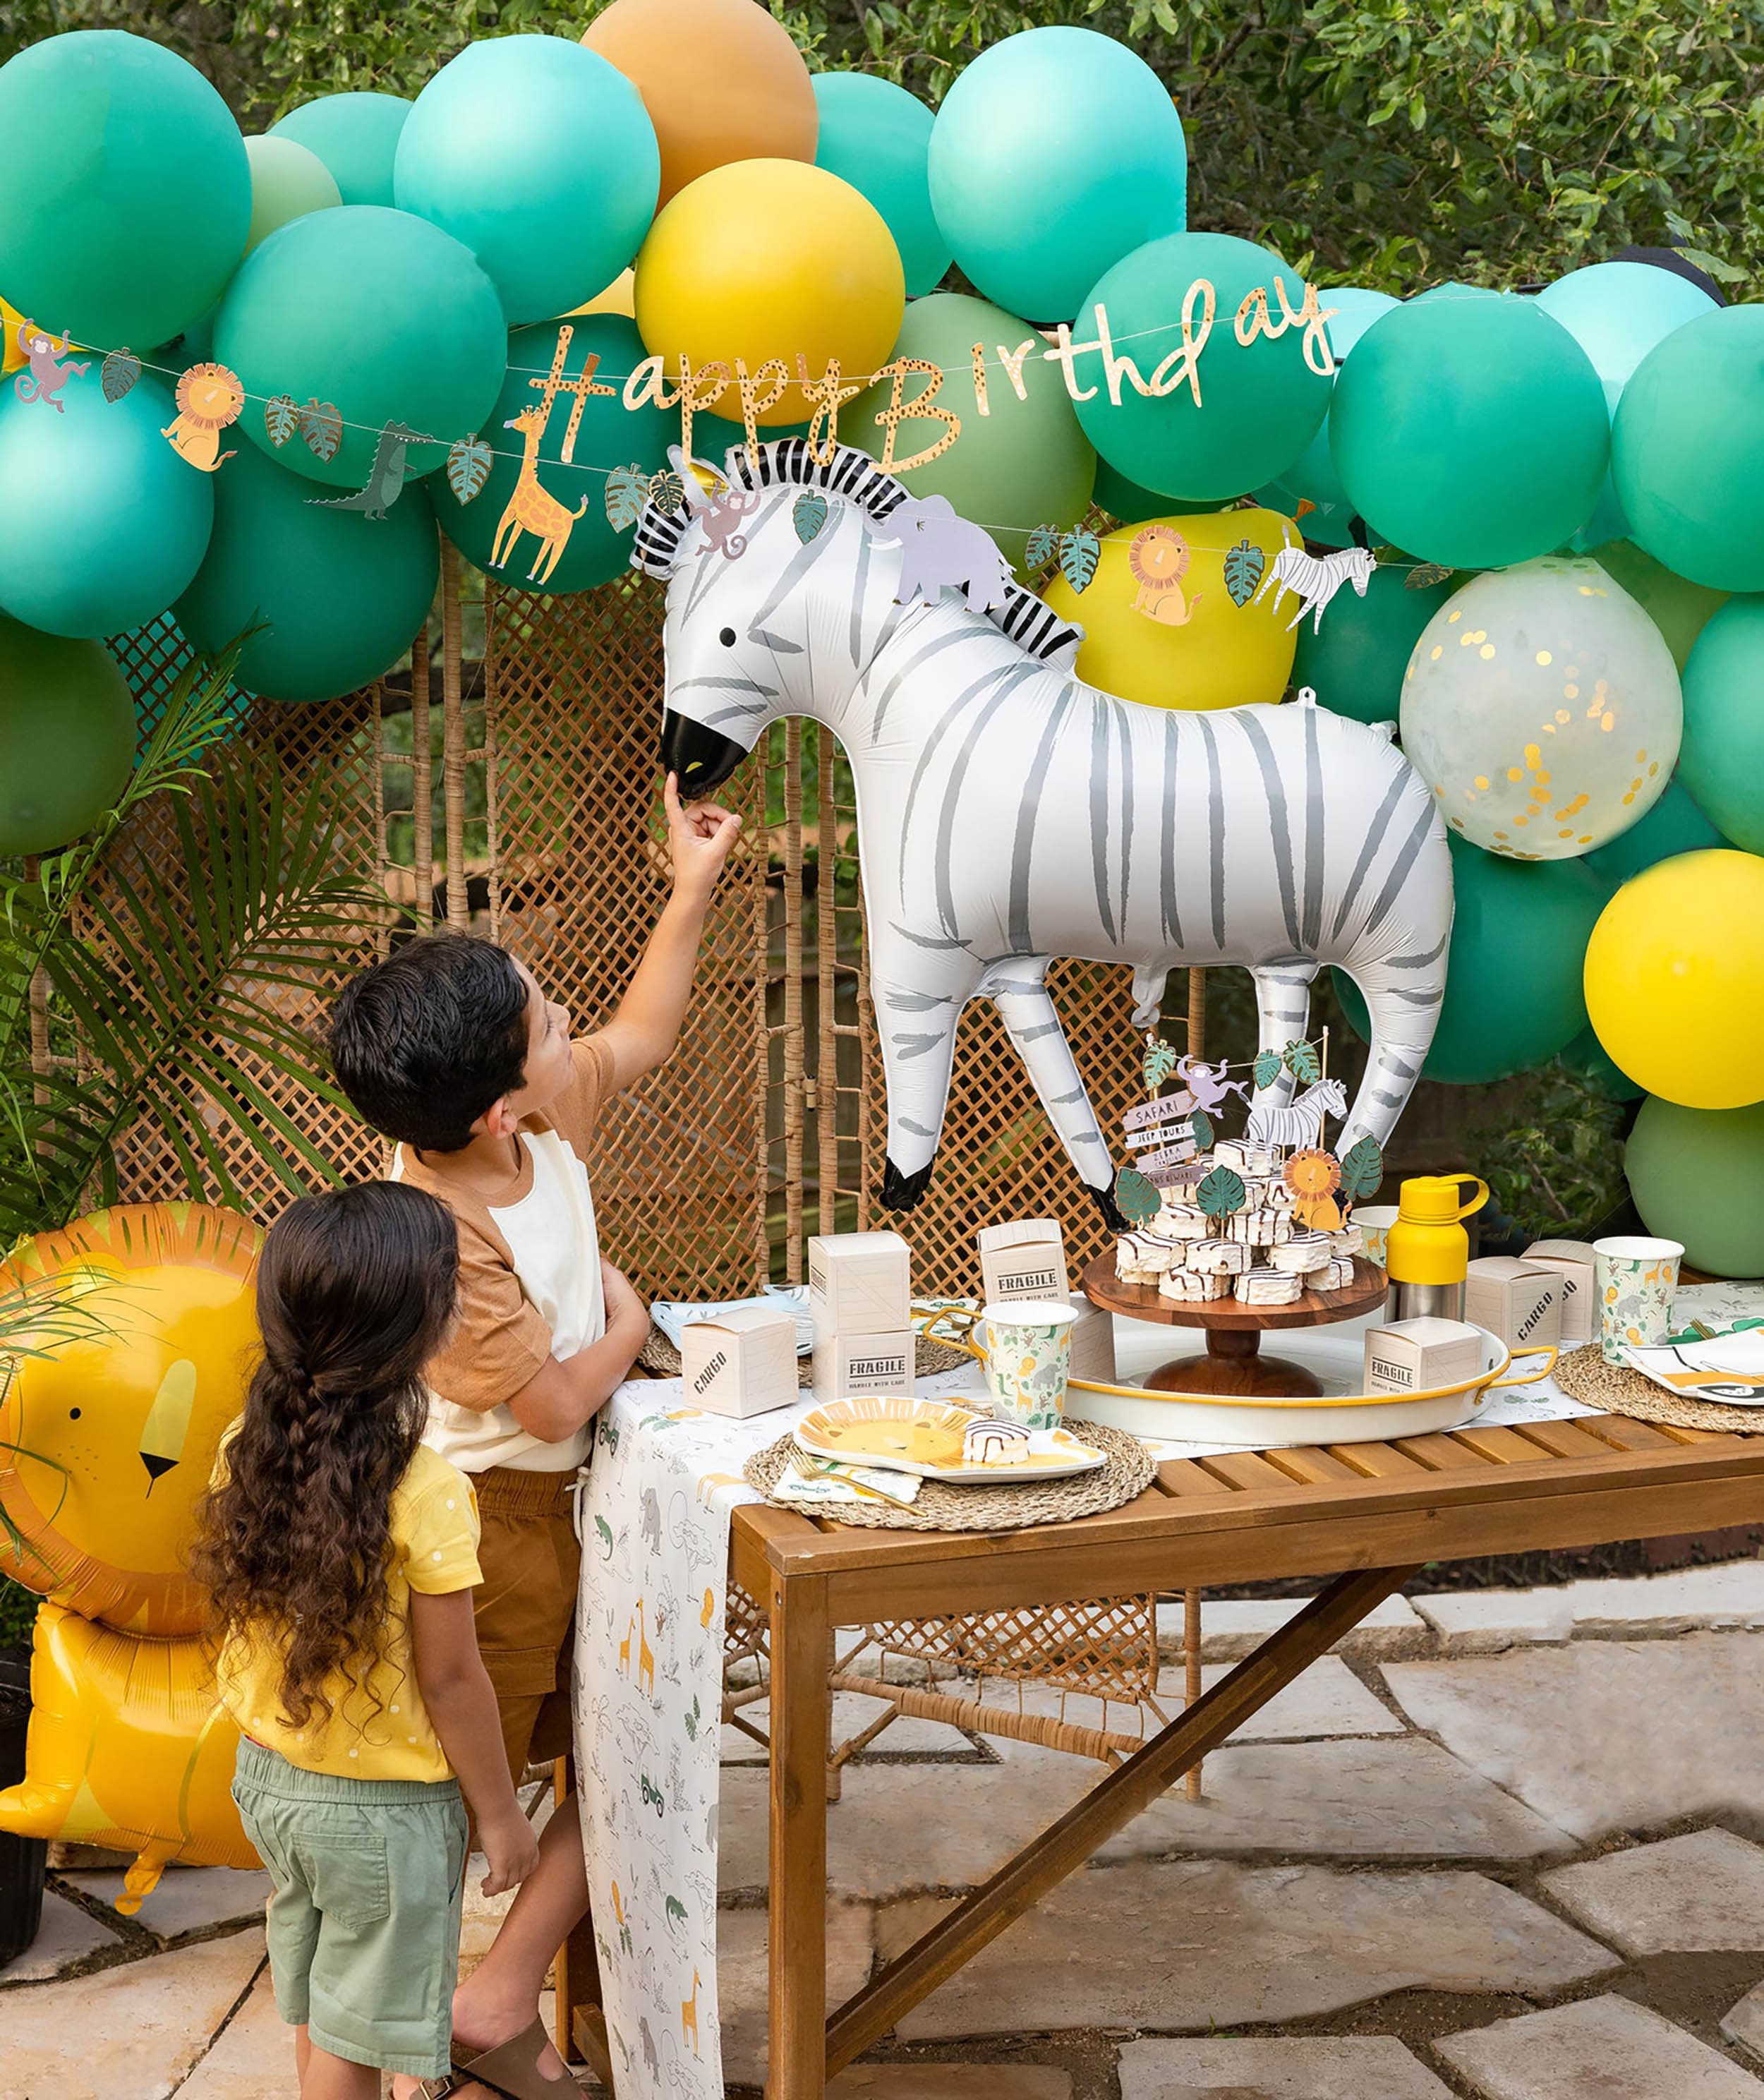 Zebra Plates | Zebra Baby Shower - Wild One Birthday - Safari Birthday Party - Safari Party - Safari Baby Shower - Zoo Birthday Party